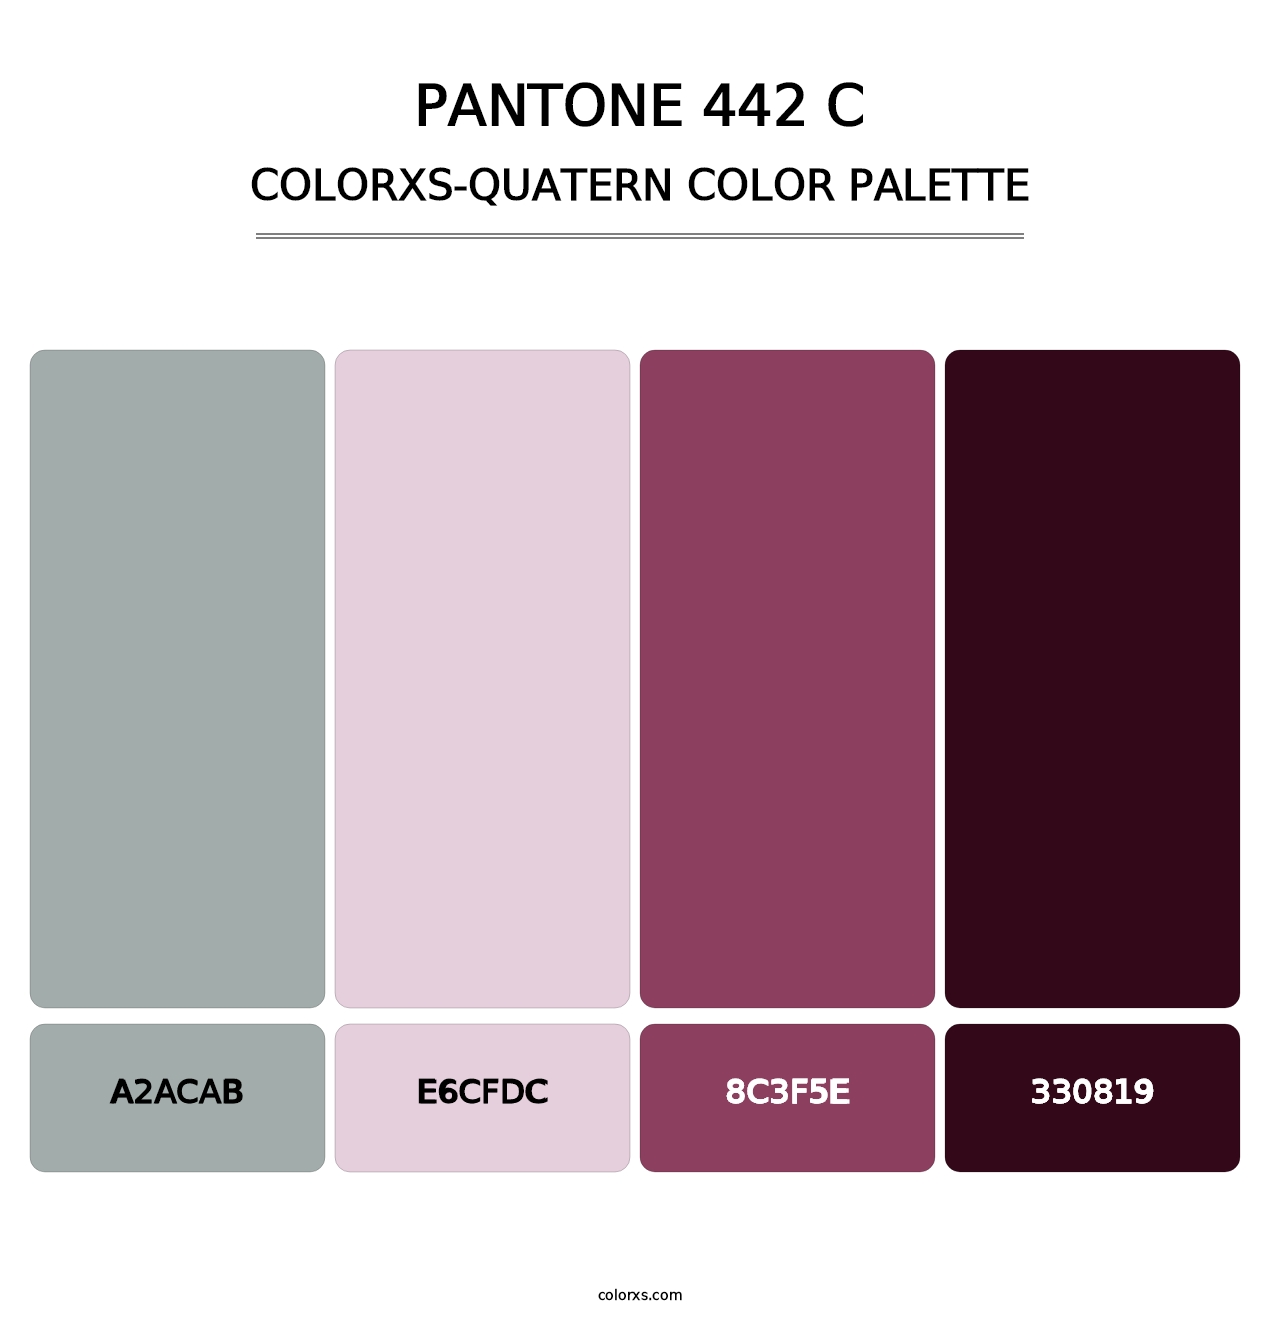 PANTONE 442 C - Colorxs Quatern Palette